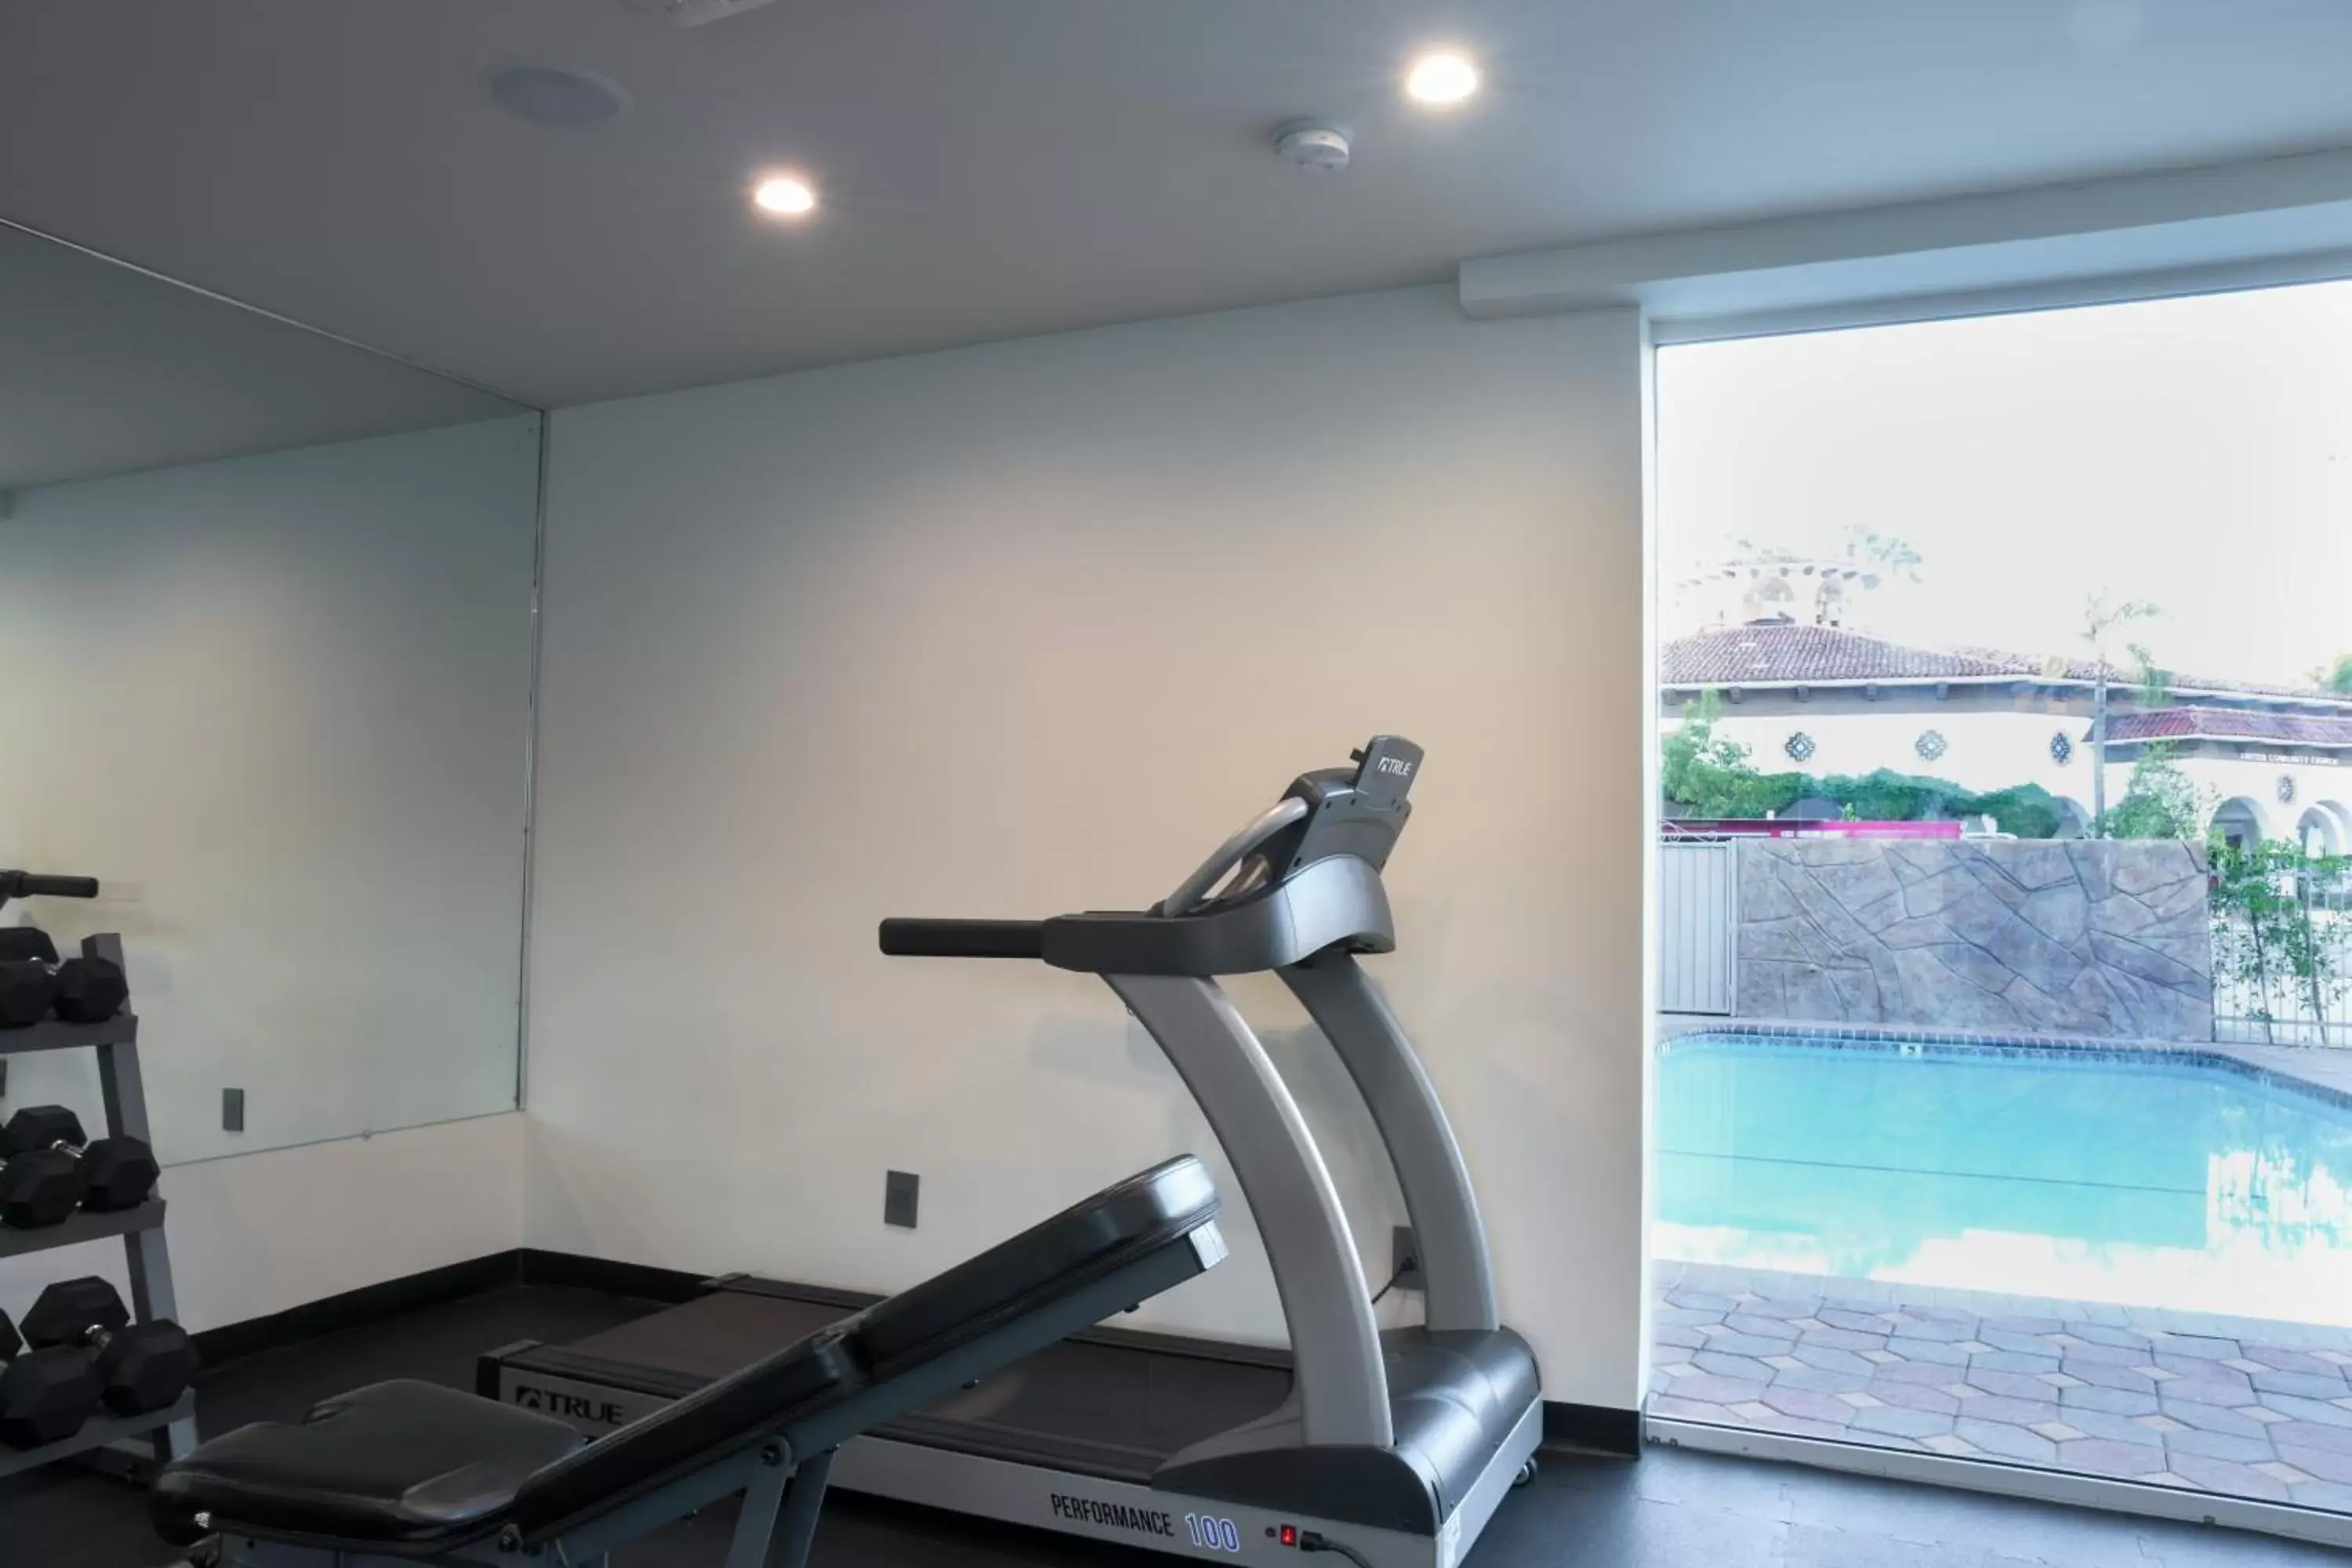 Fitness centre/facilities in Hotel Xilo Glendale